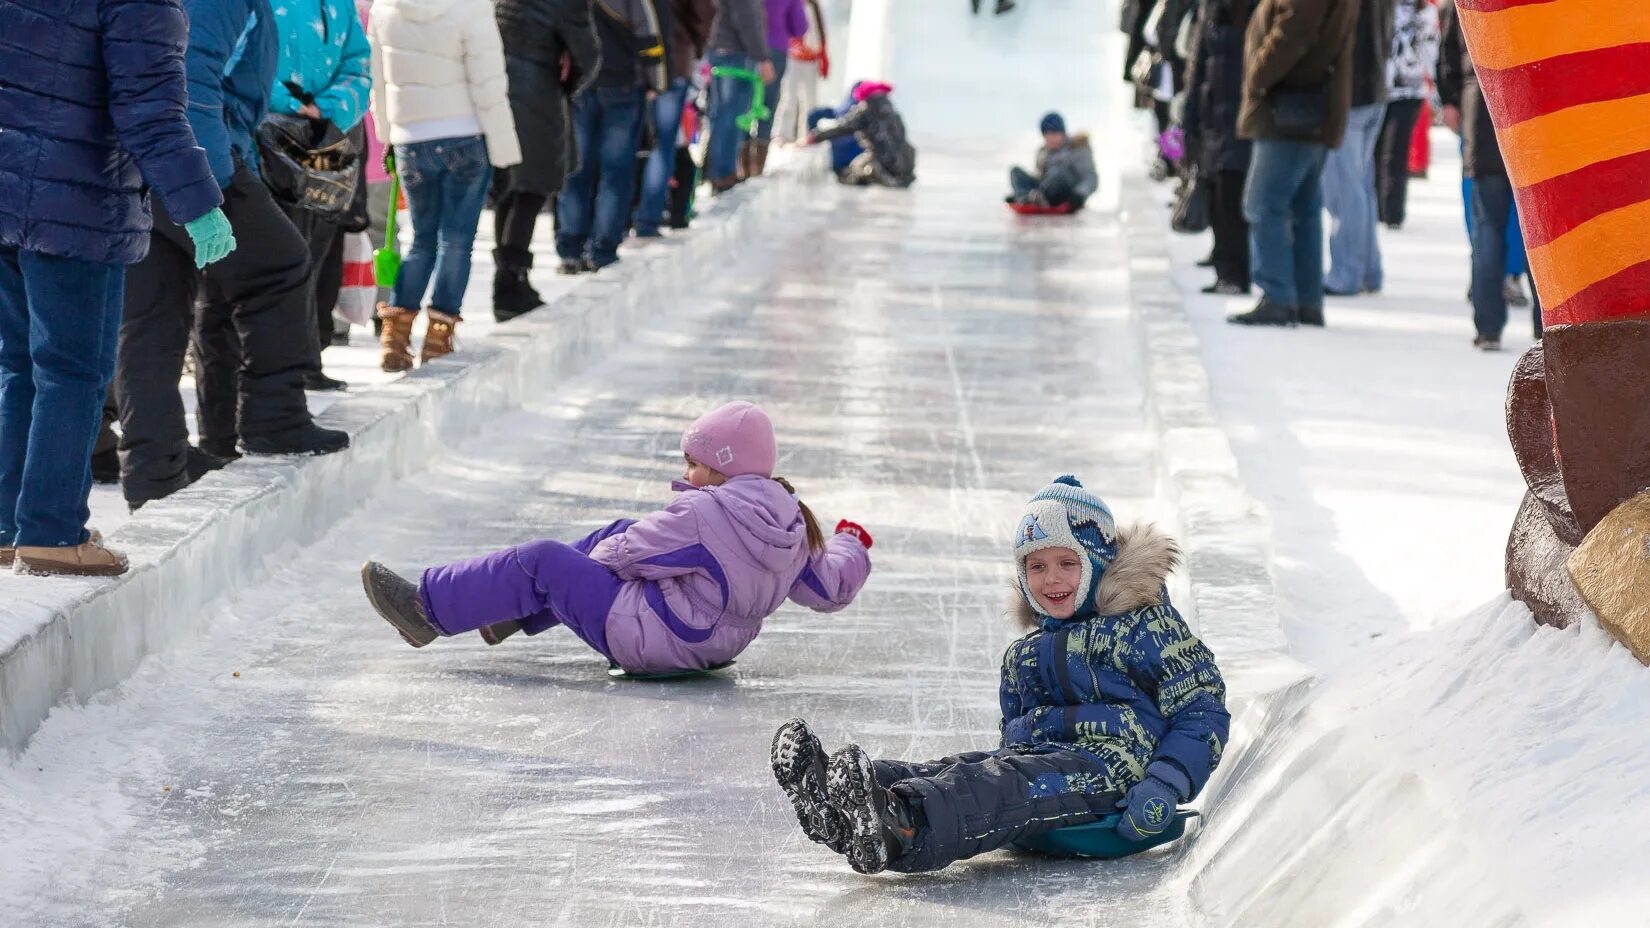 Сегодня. Катание с ледяной горки. Дети на ледяных Горках. В России Городке ледяной сейчас растаял лед. Дети бегают на льду тает.